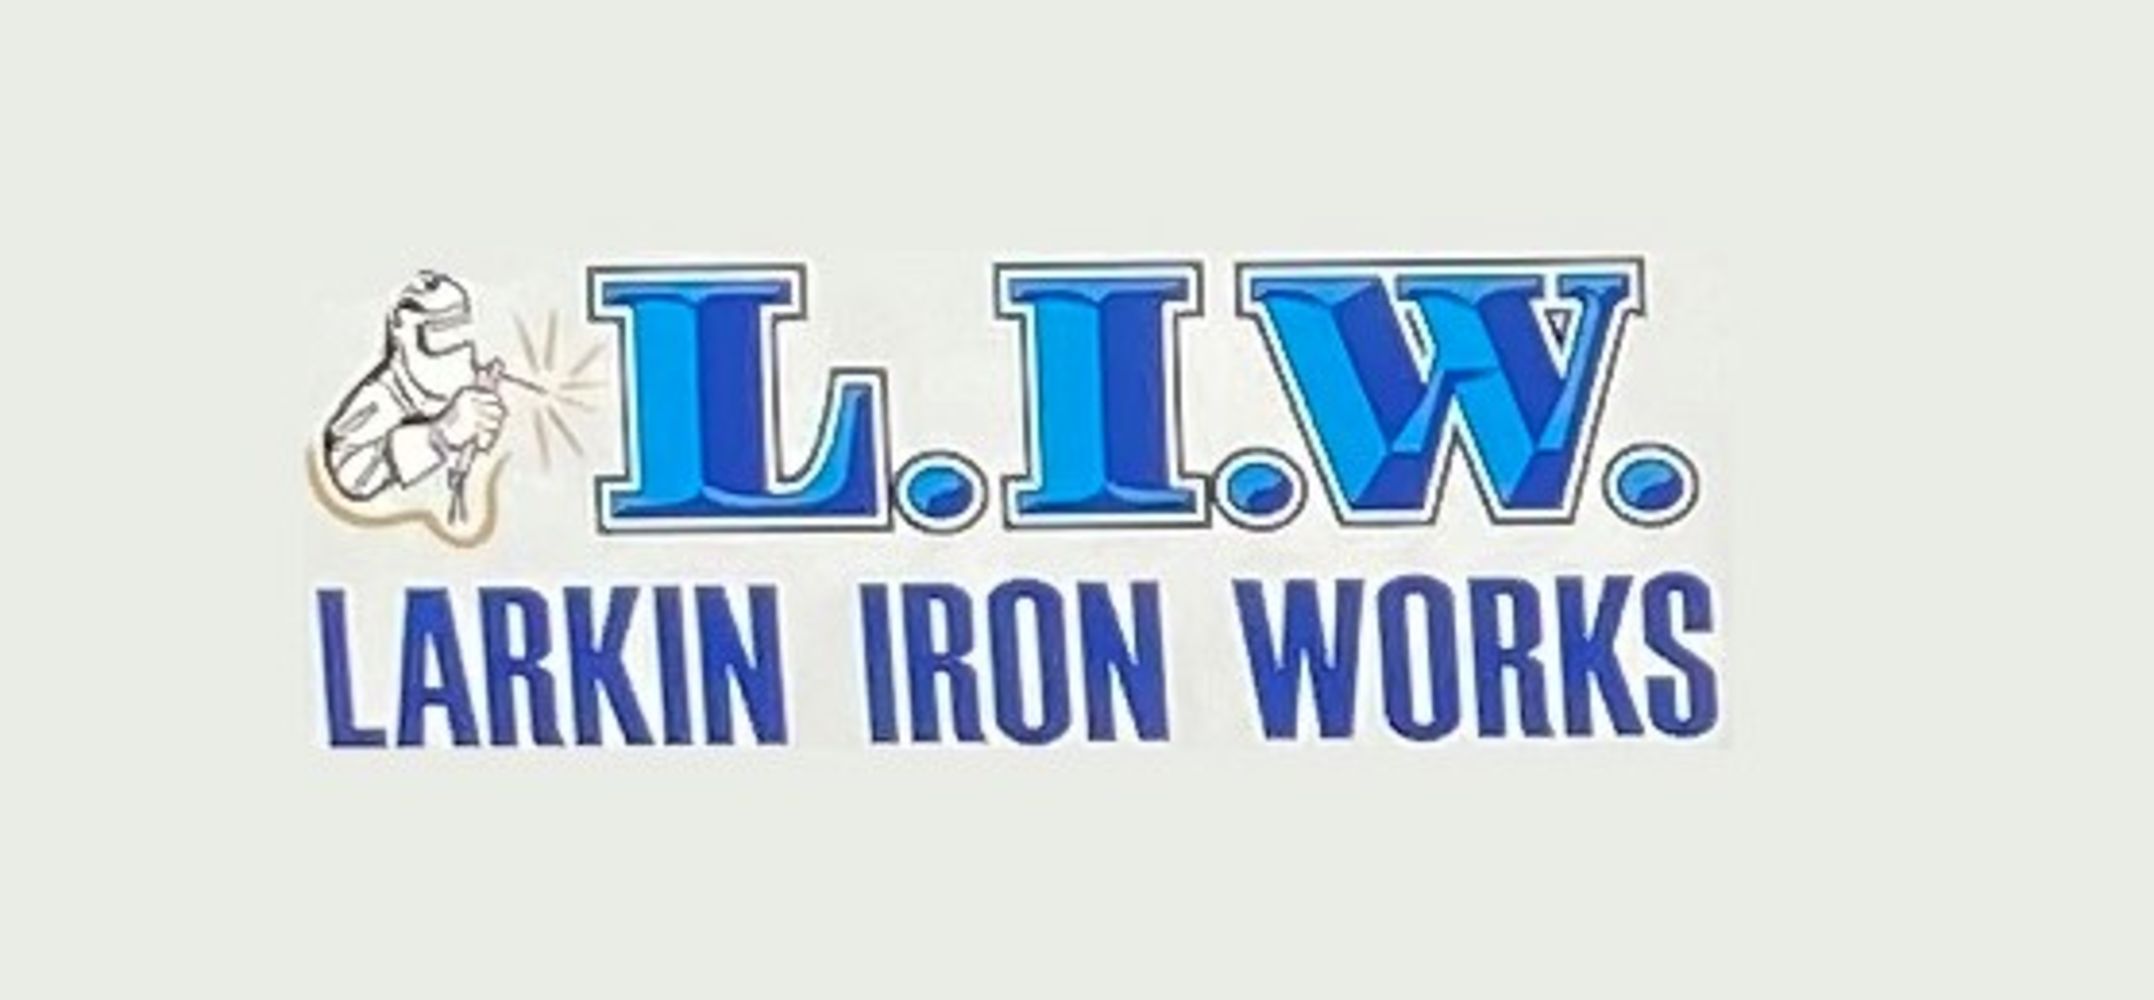 Larkin Iron Works